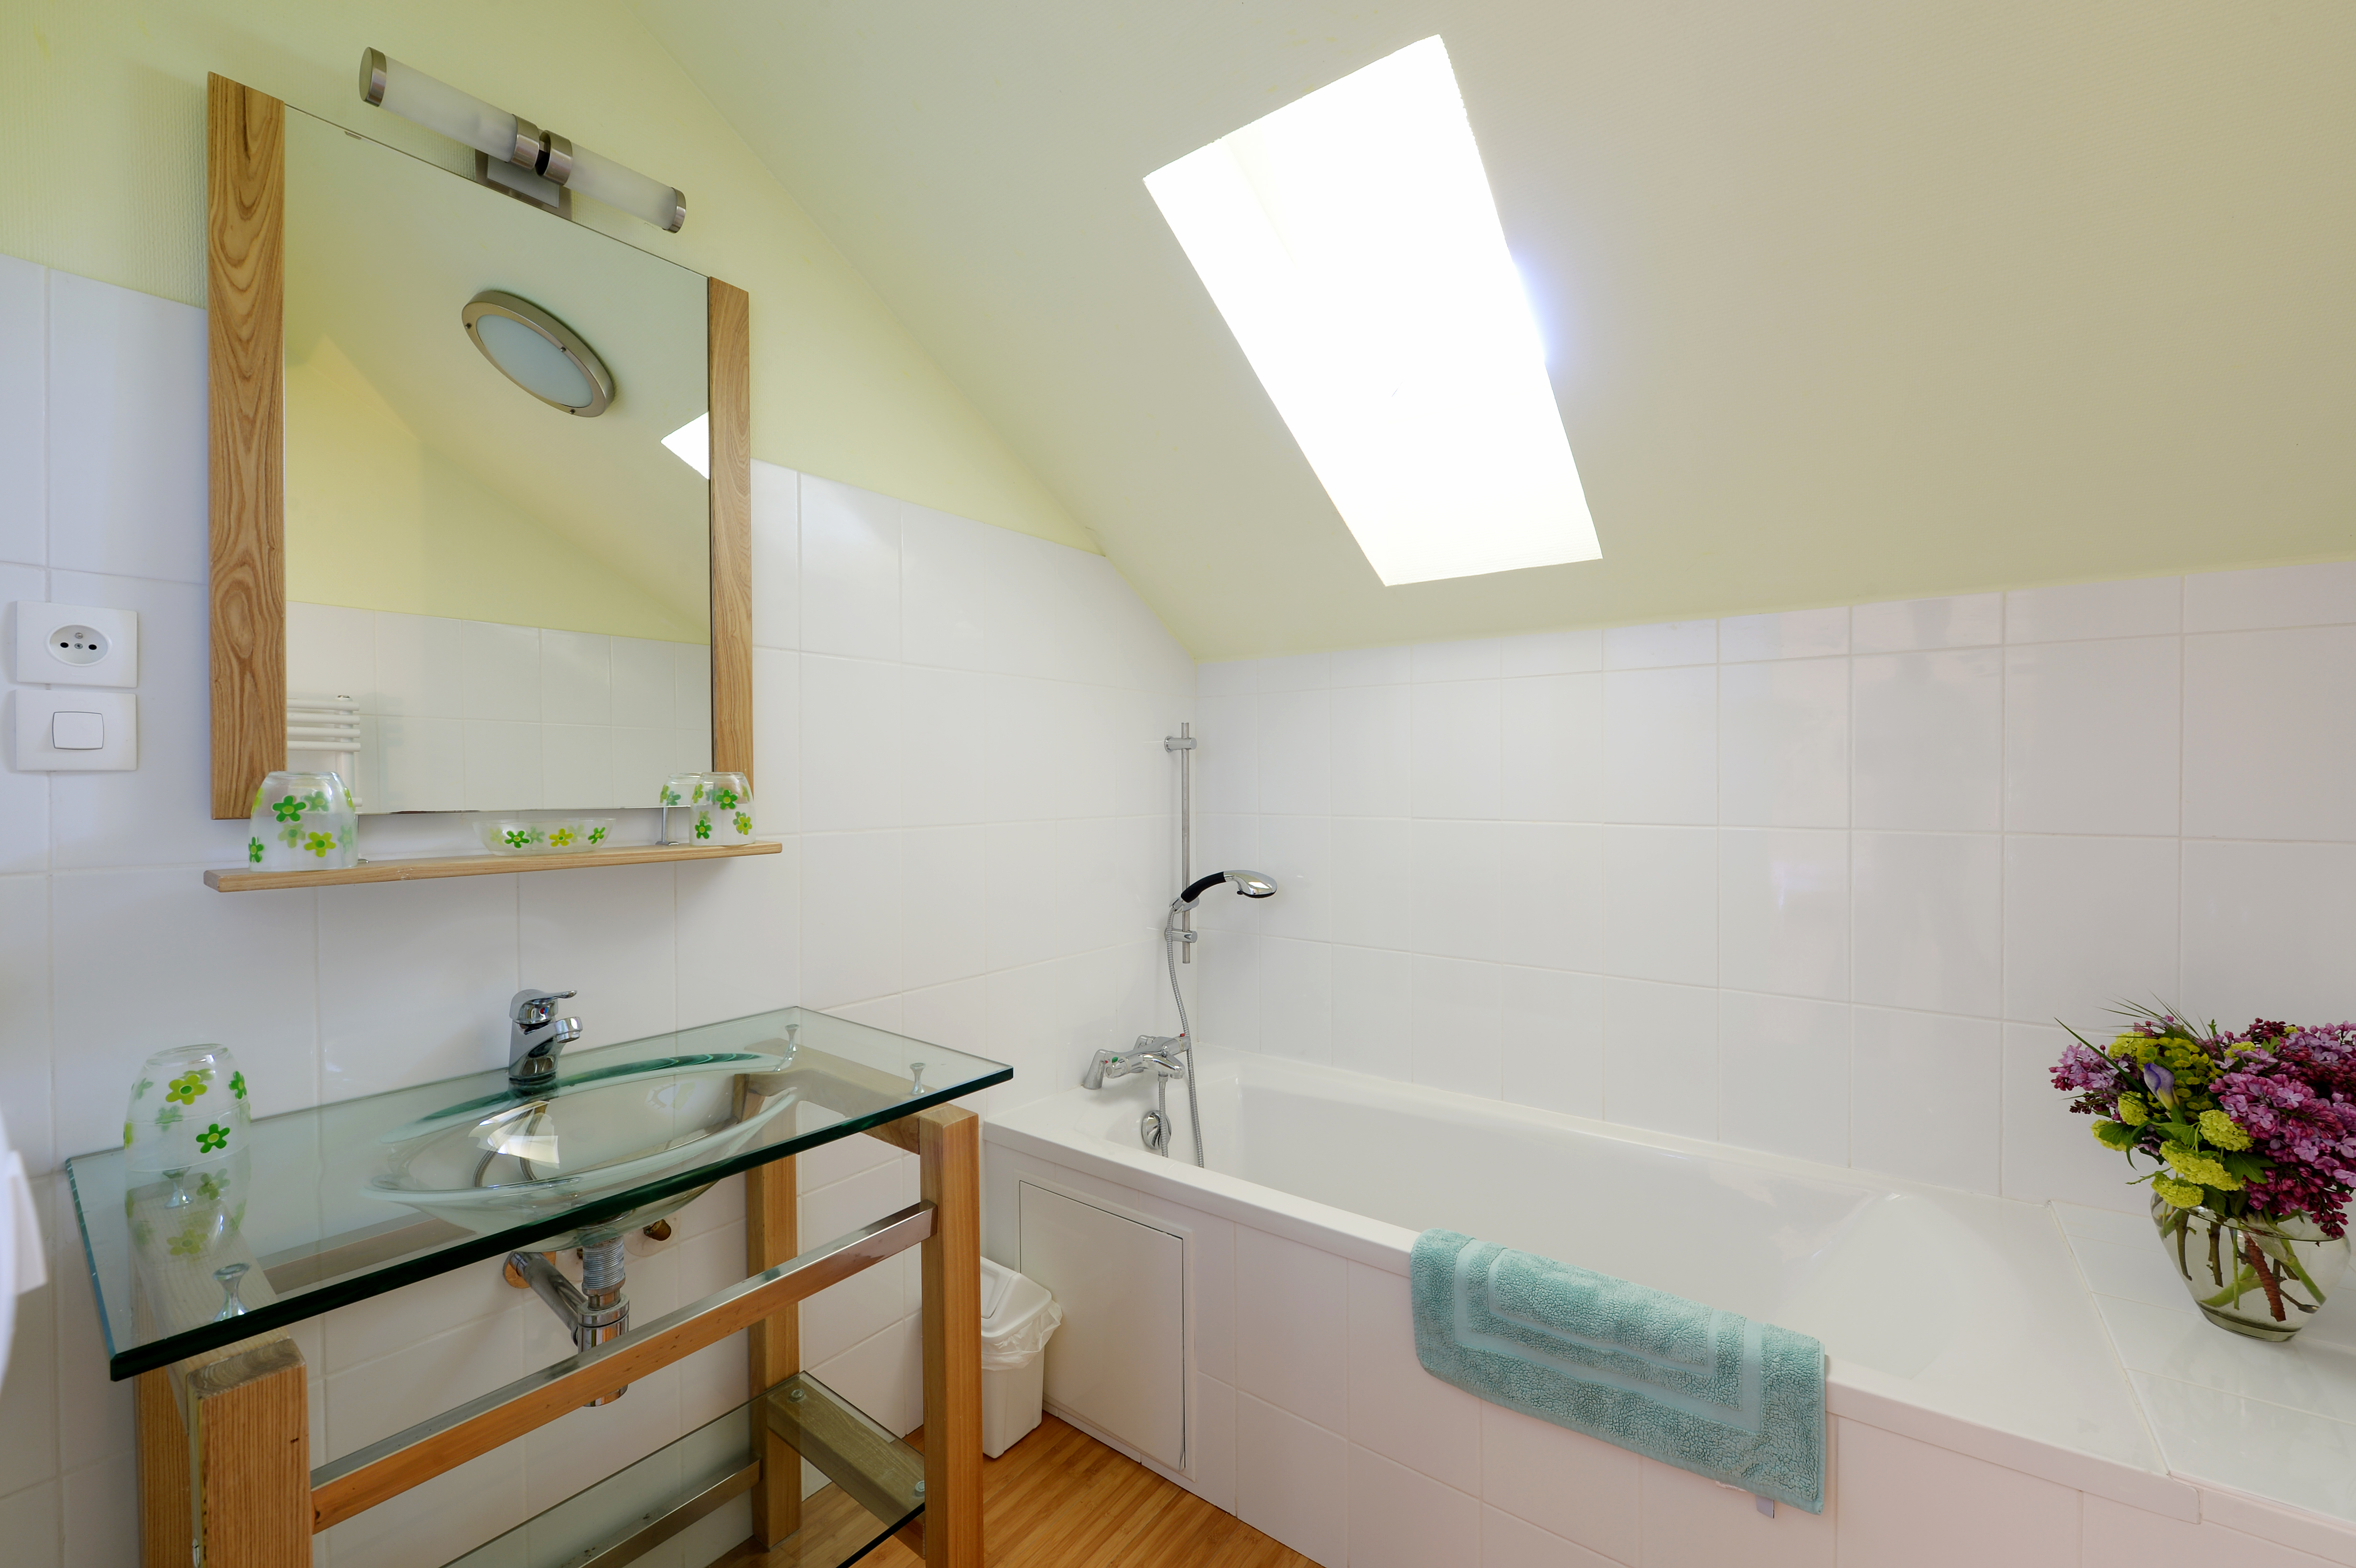 Salle de bain lumineuse avec baignoire sous un velux, offrant une ambiance fraîche et propre.